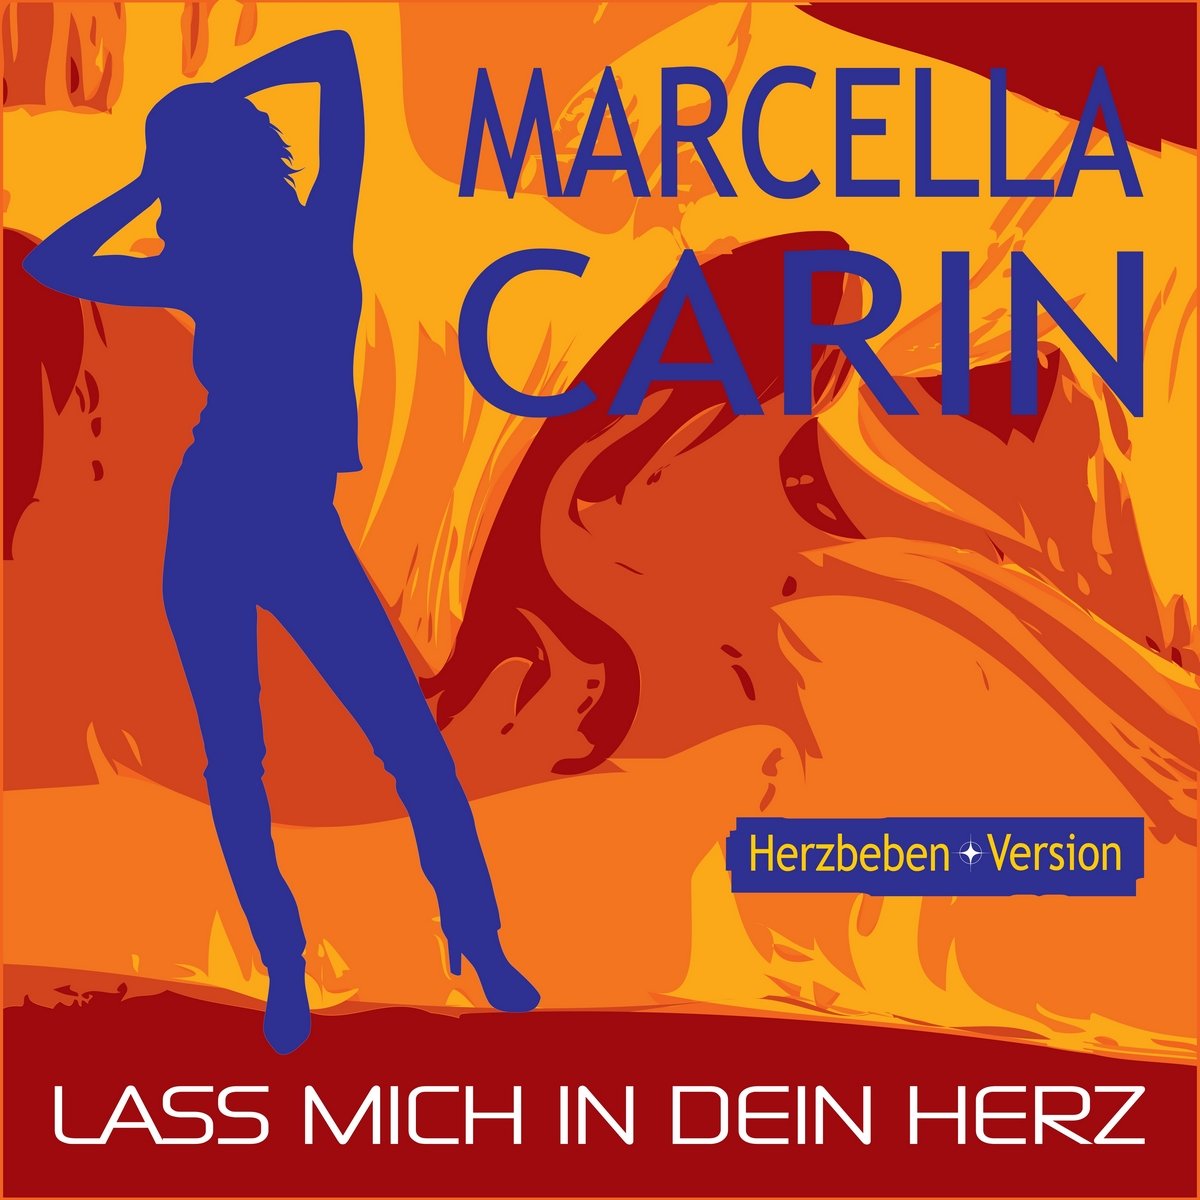 marcella-carin-lass-mich-in-dein-herz-herzbeben Marcella Carin – Lass mich in dein Herz (Herzbeben-Version)